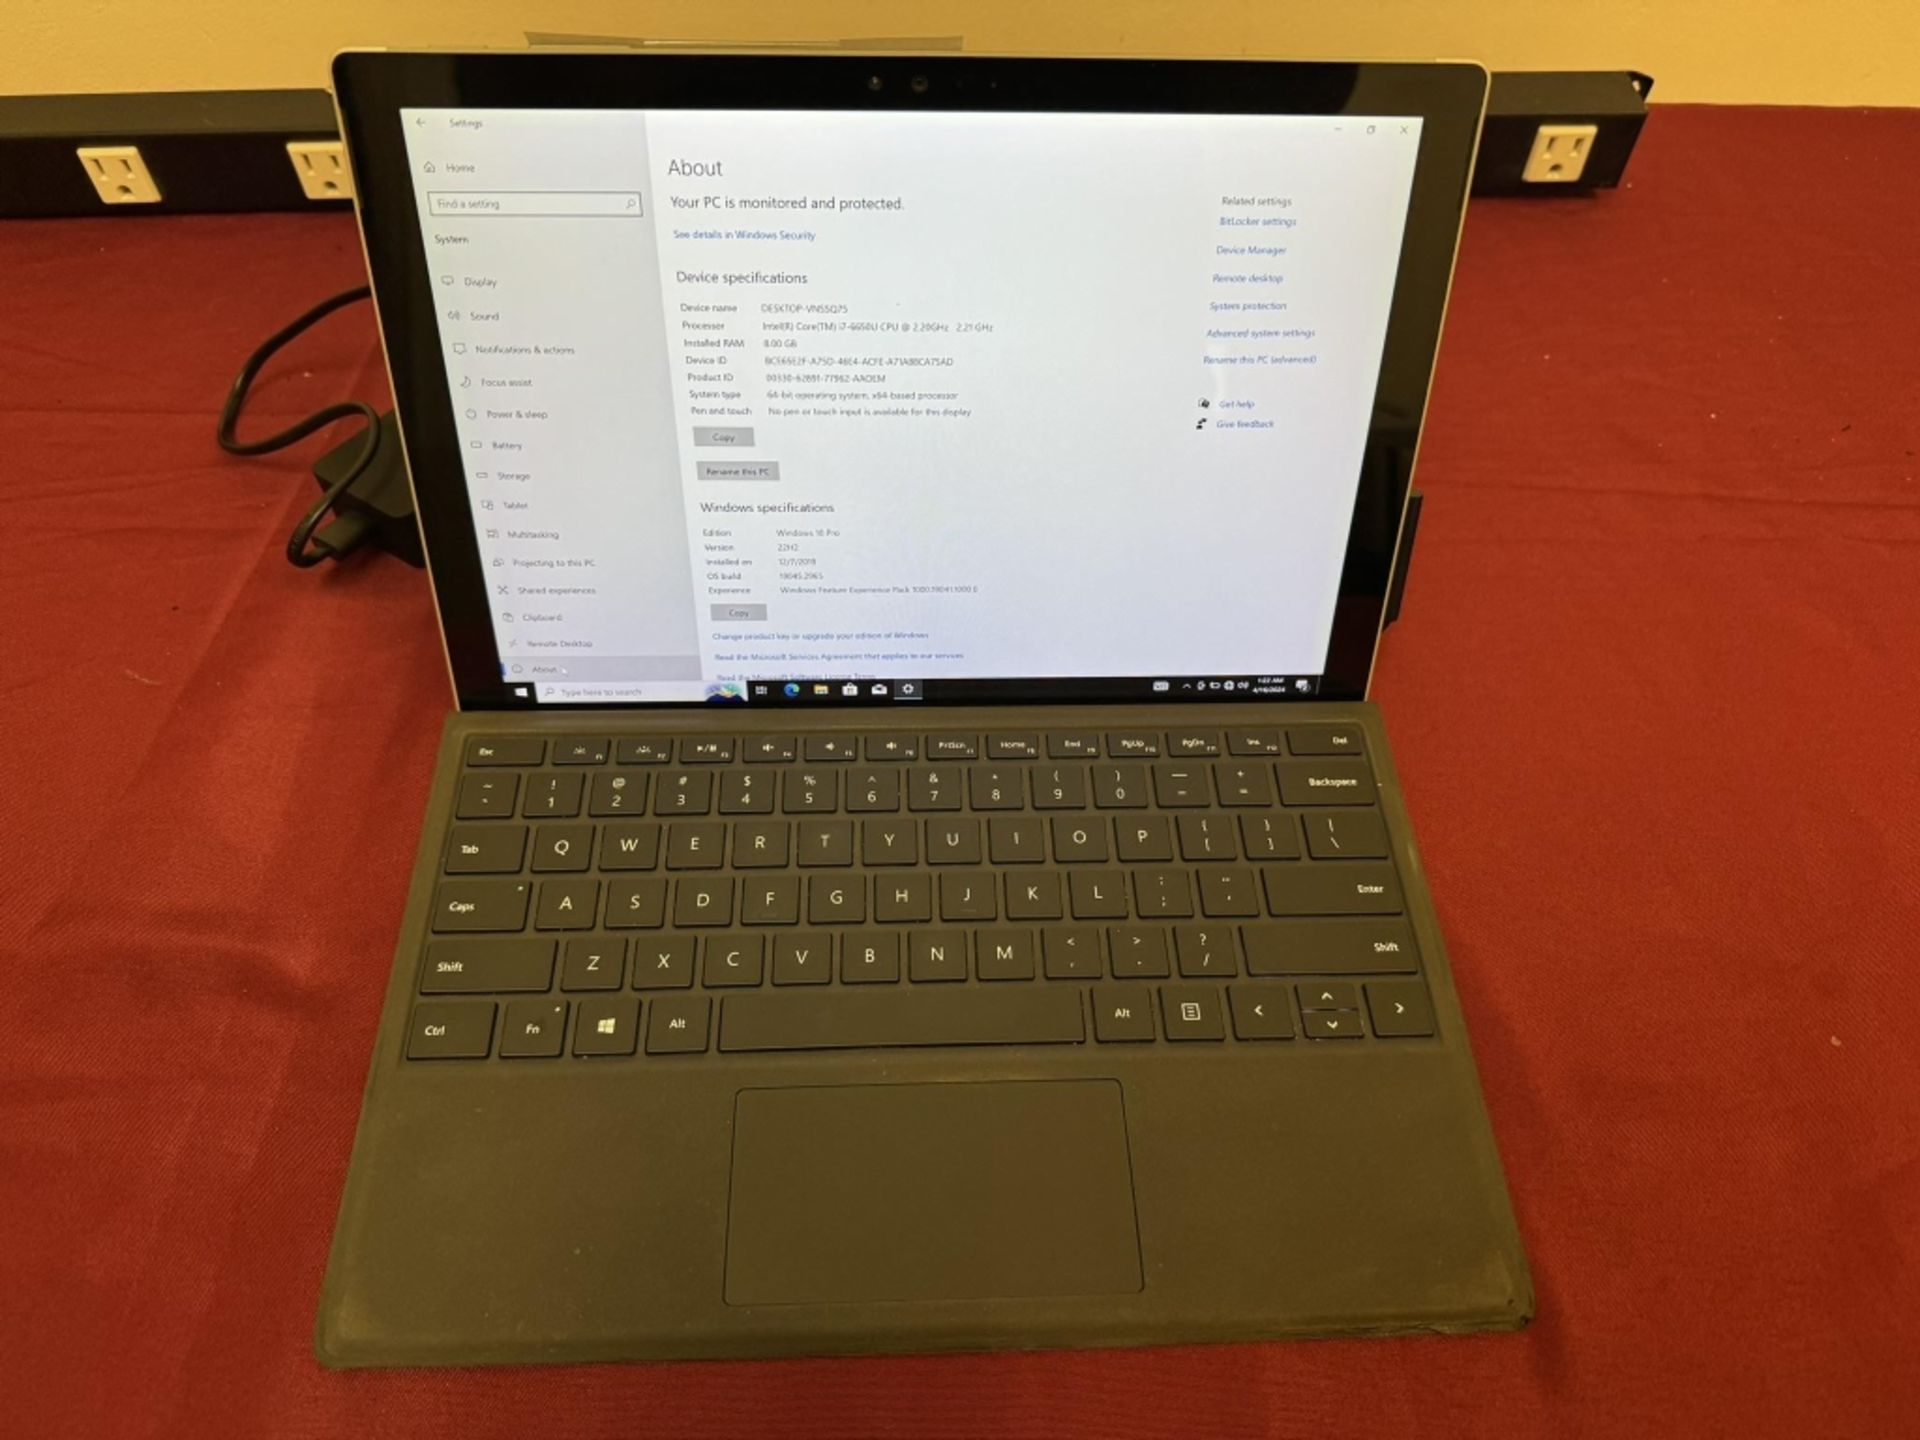 Microsoft Surface Pro 4 Corei7 8GB RAM 256GB SSD - Image 2 of 5